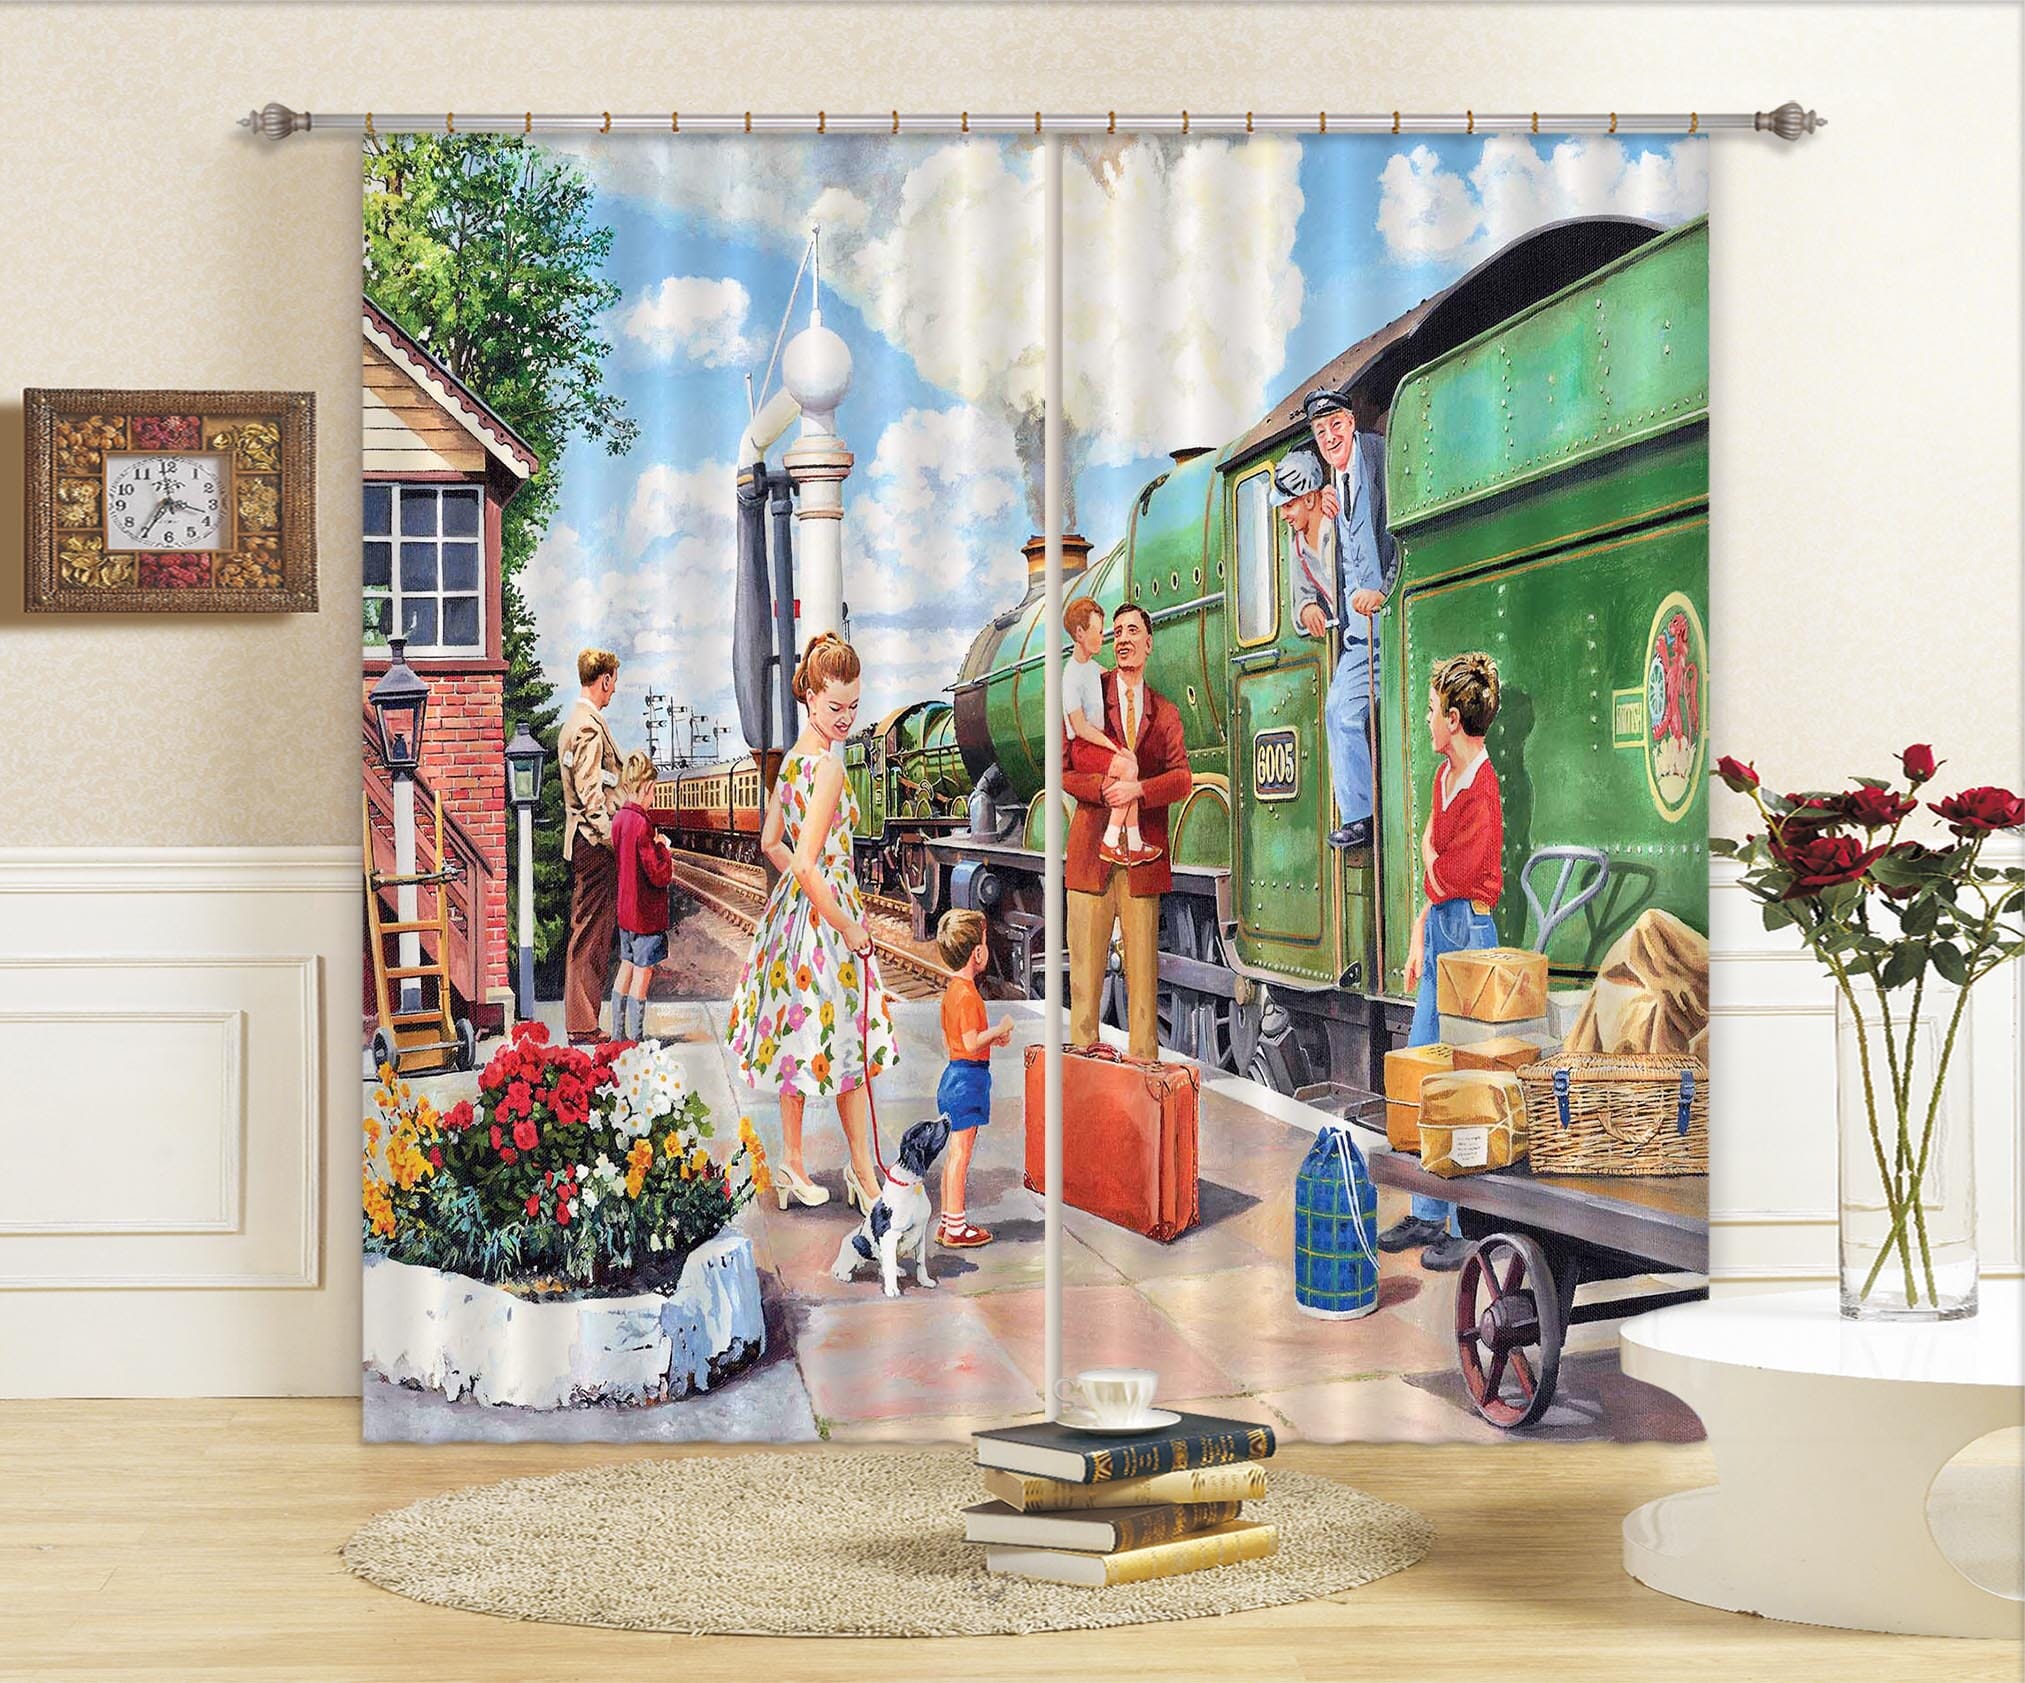 3D The Train Driver 109 Trevor Mitchell Curtain Curtains Drapes Curtains AJ Creativity Home 